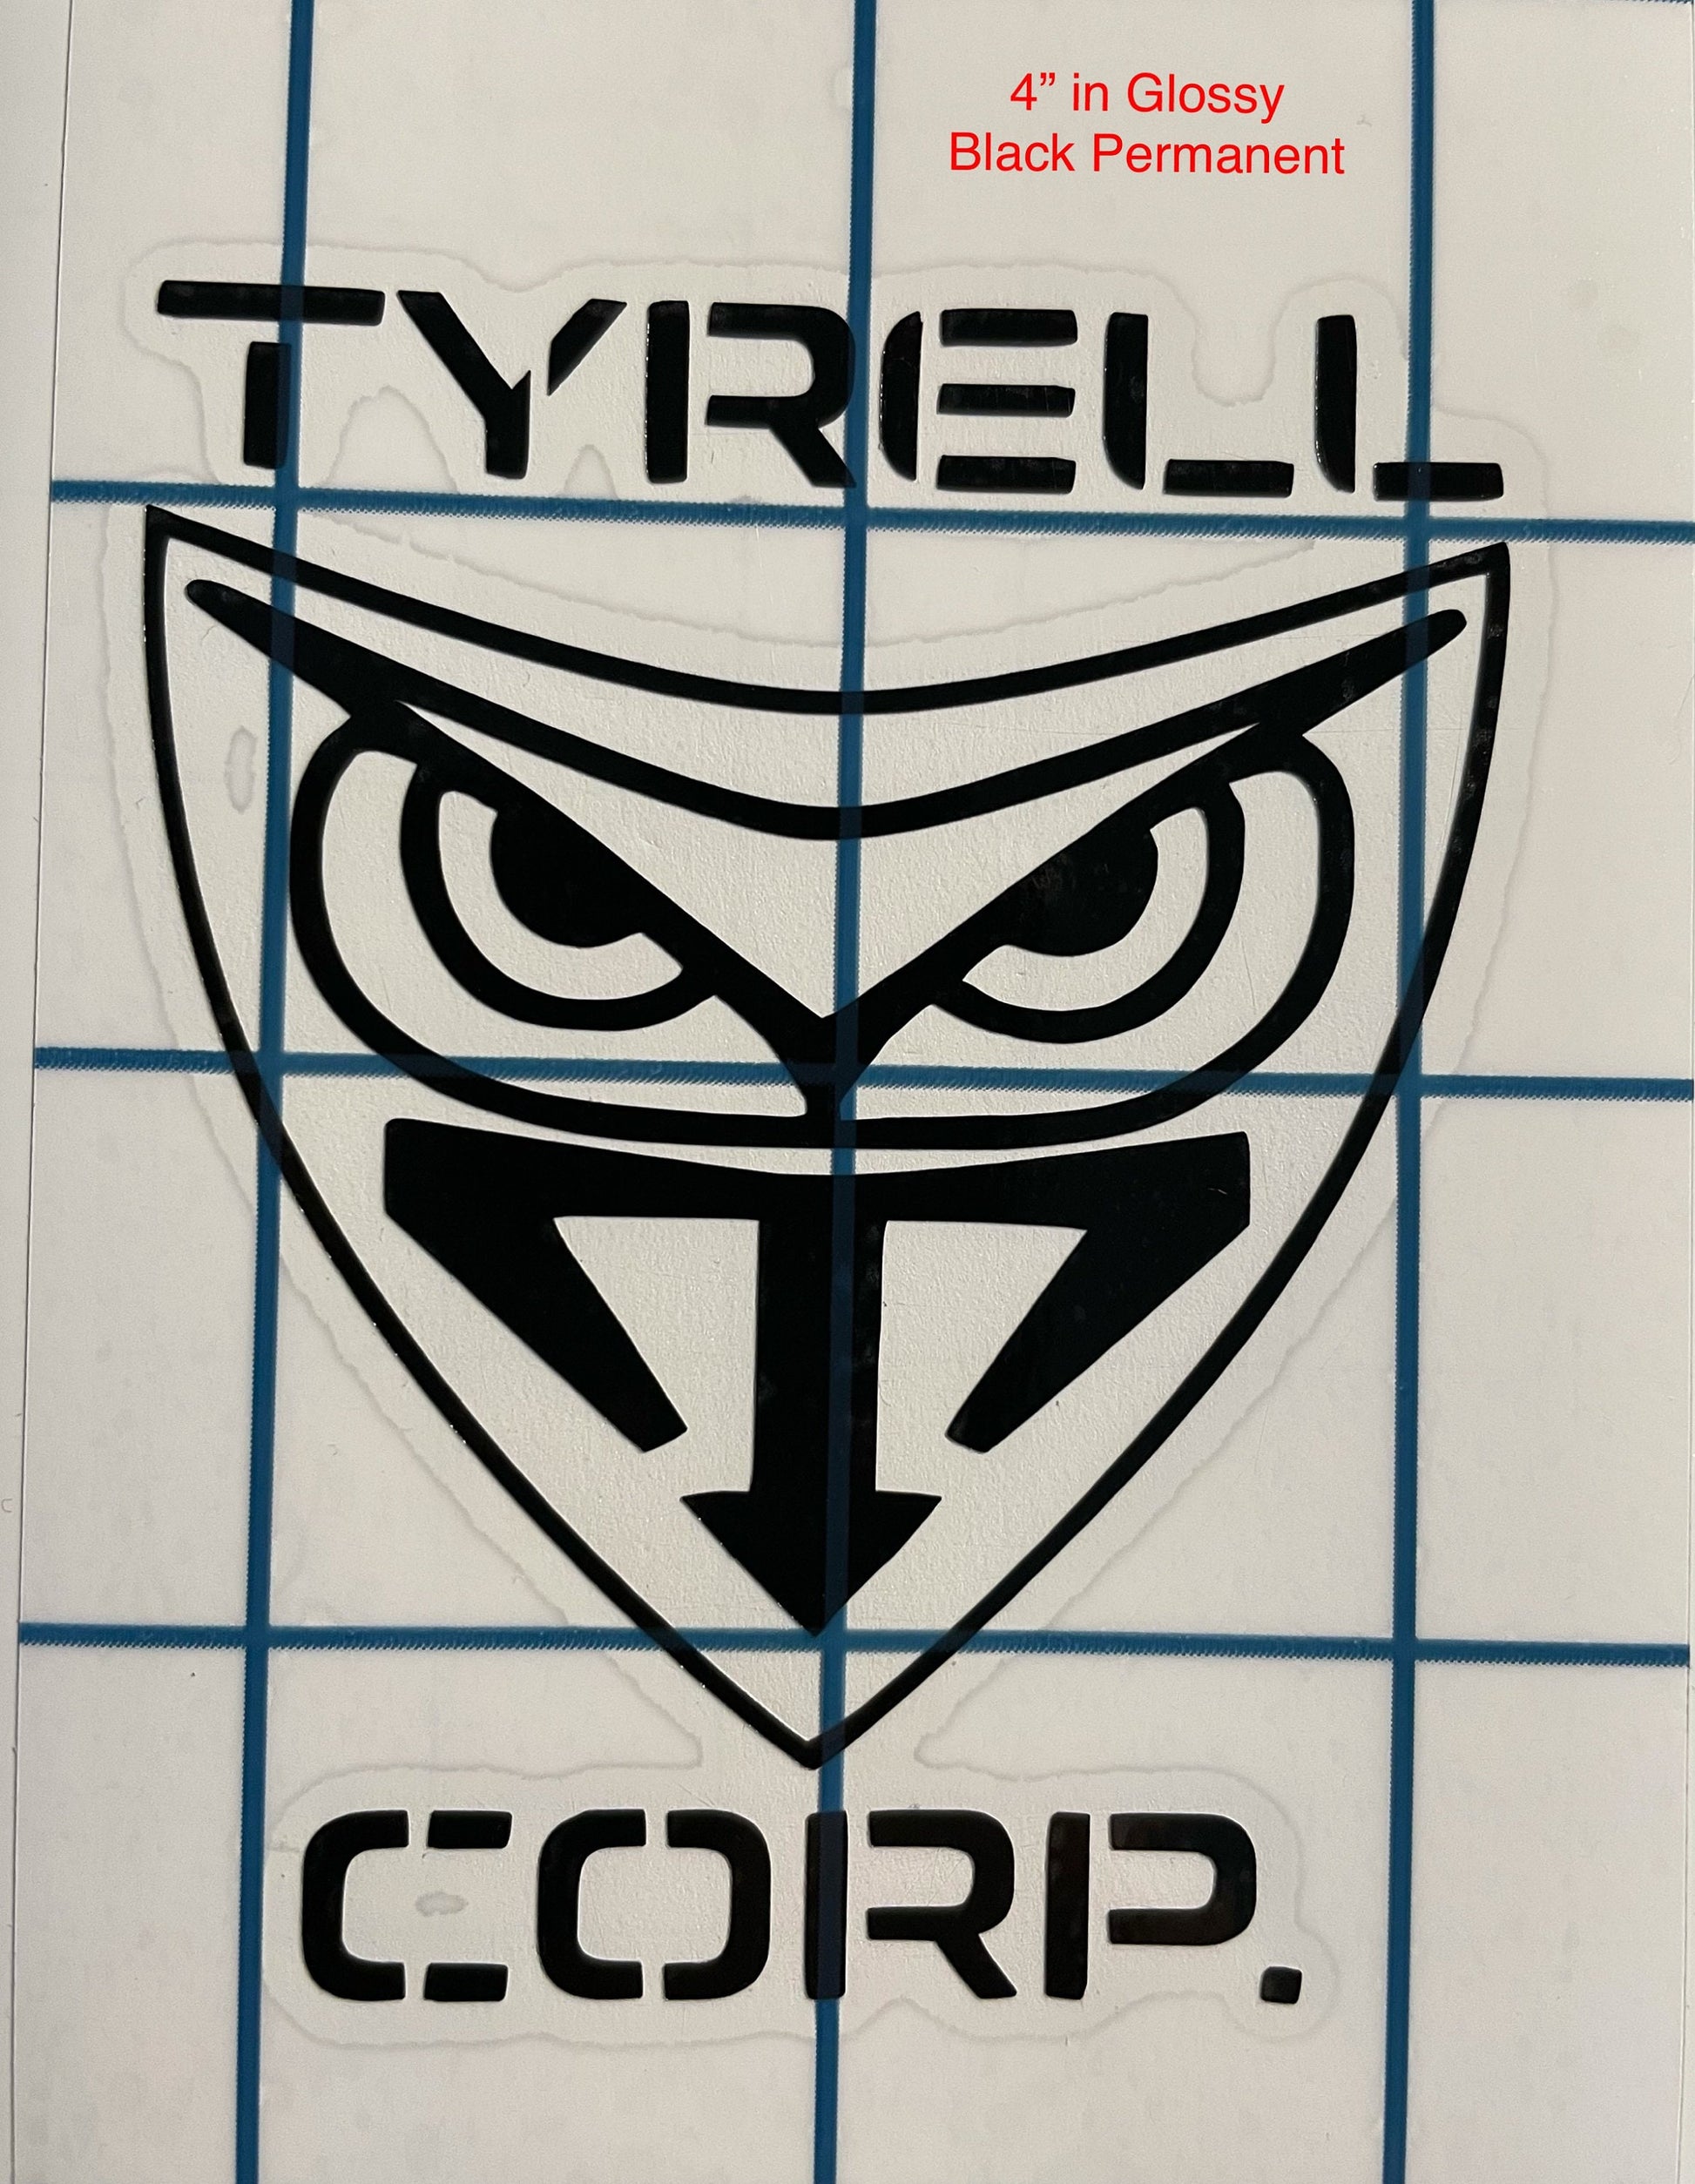 Tyrell Corp Geek Vinyl Decal Black Permanent Glossy Vinyl